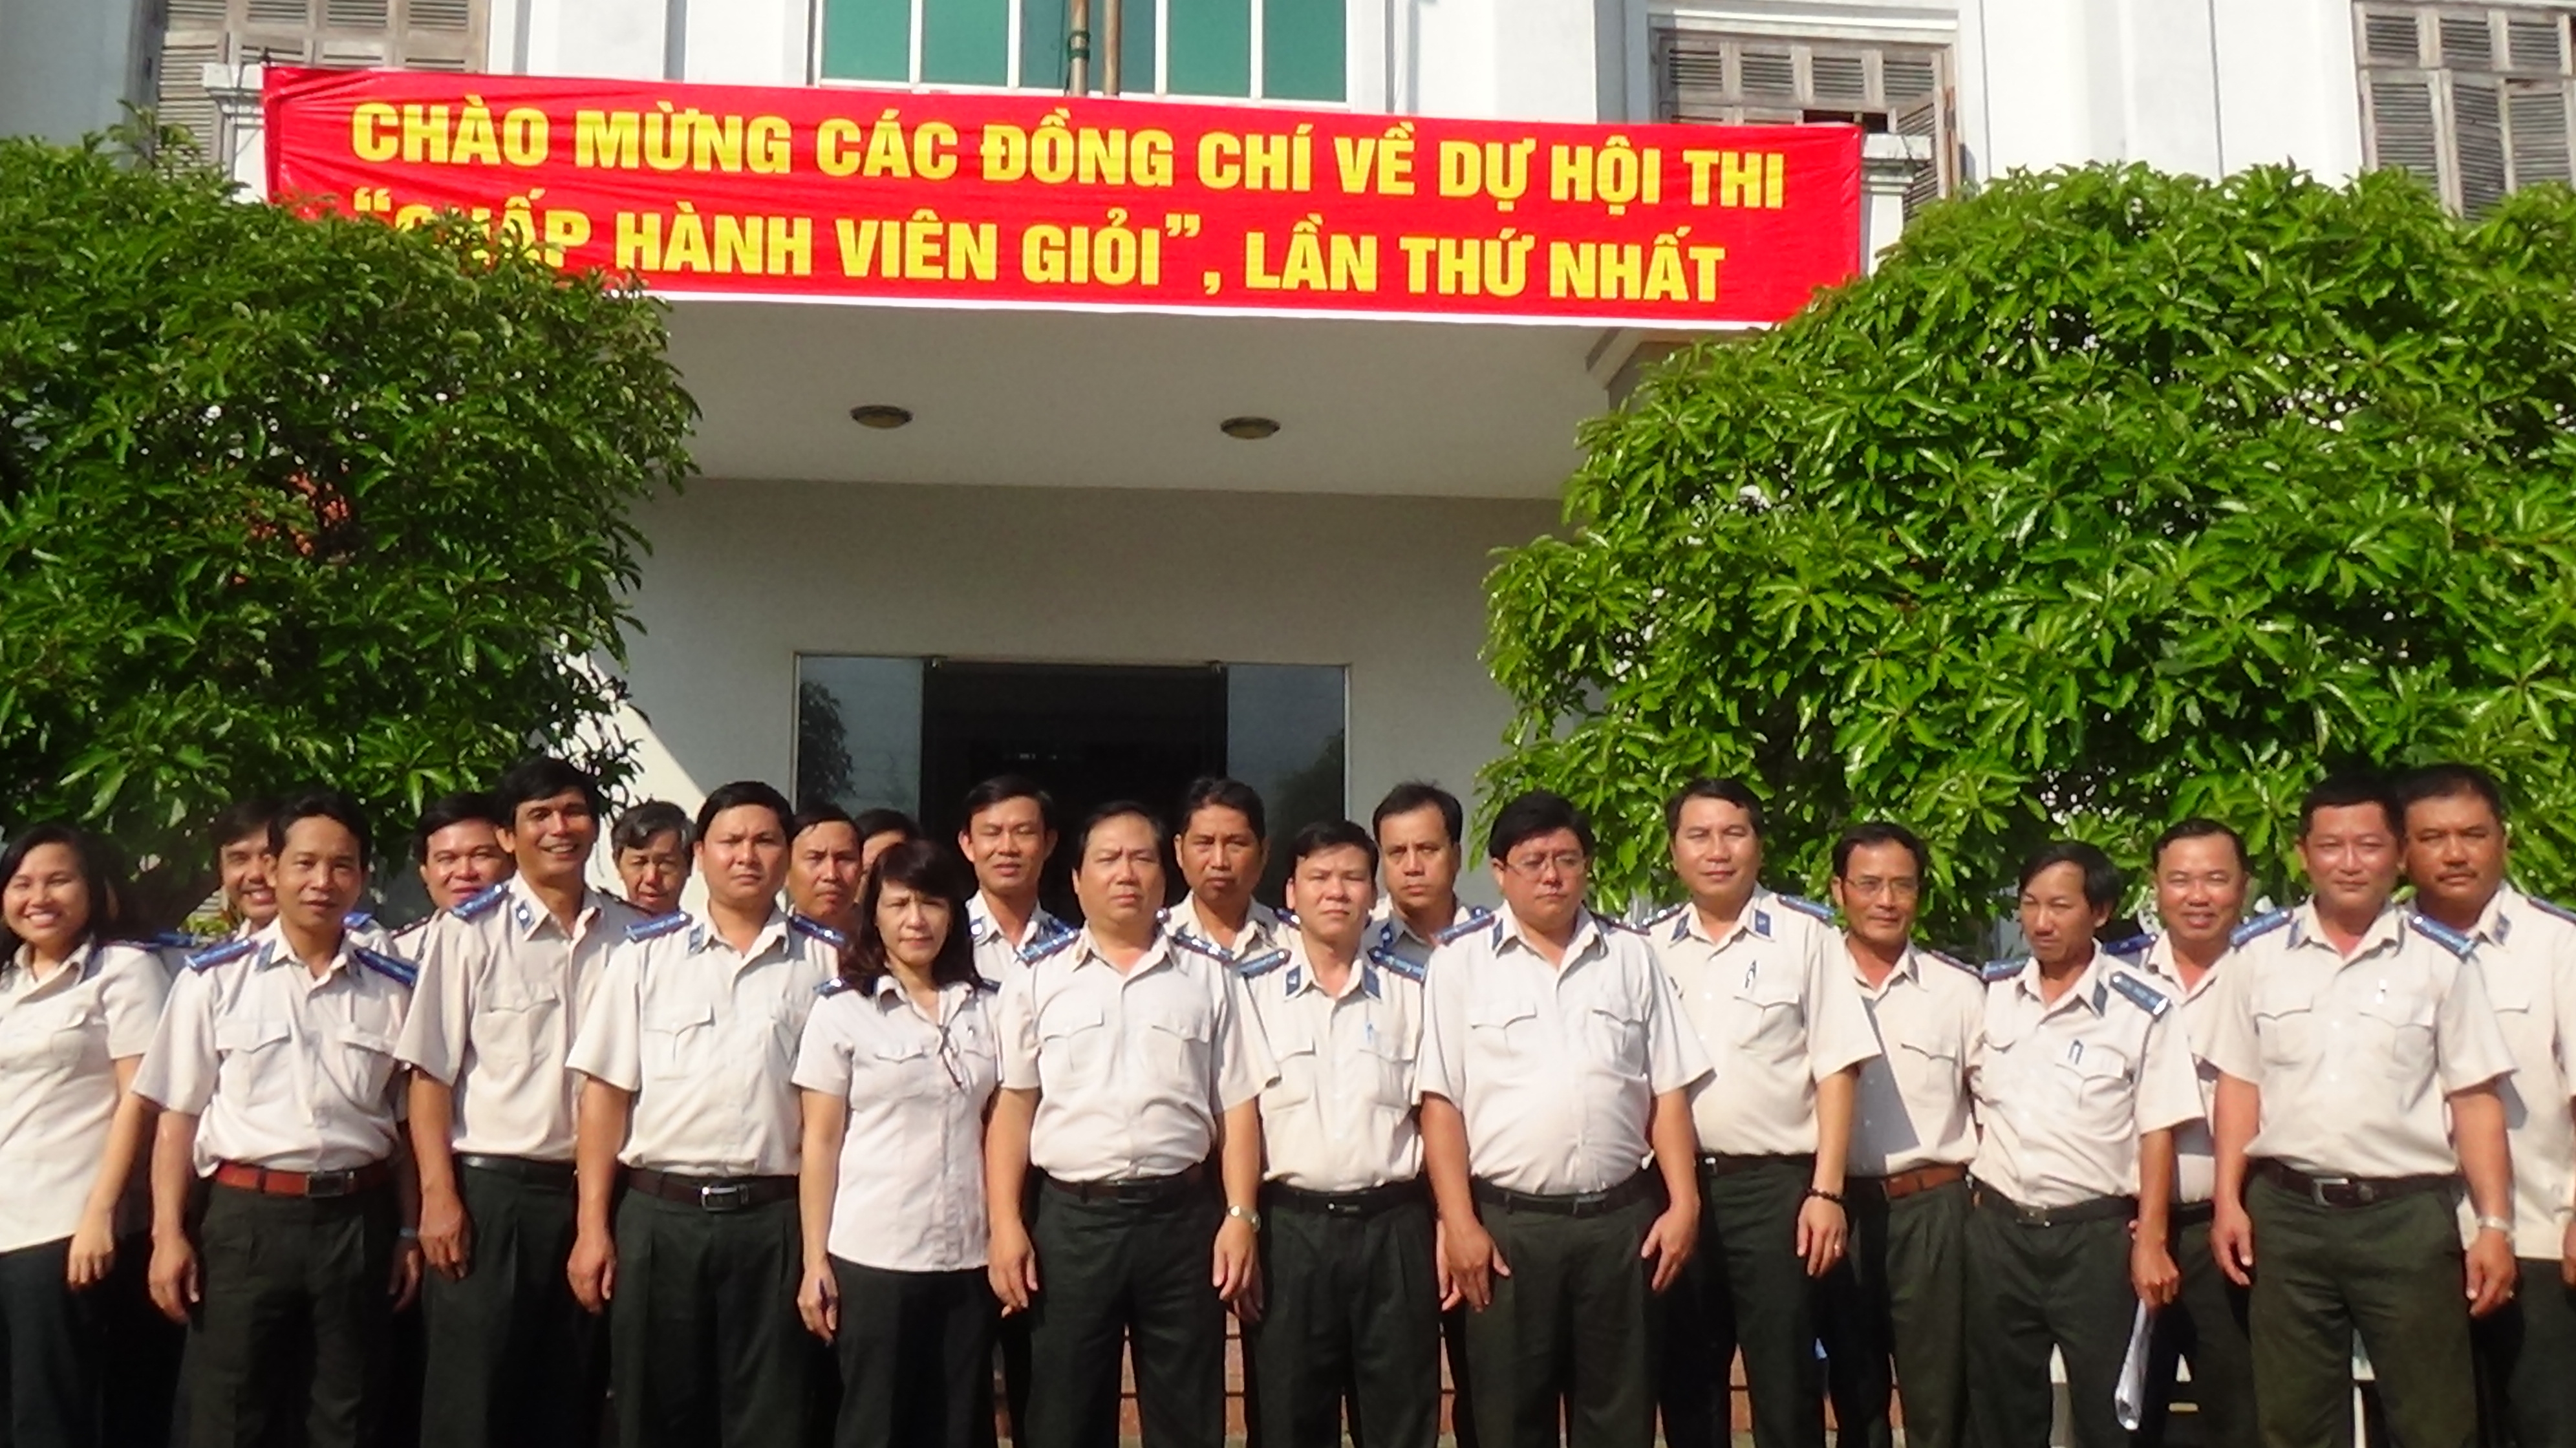 Cục THADS tỉnh Phú Yên tổ chức Hội thi Chấp hành viên giỏi lần thứ nhất